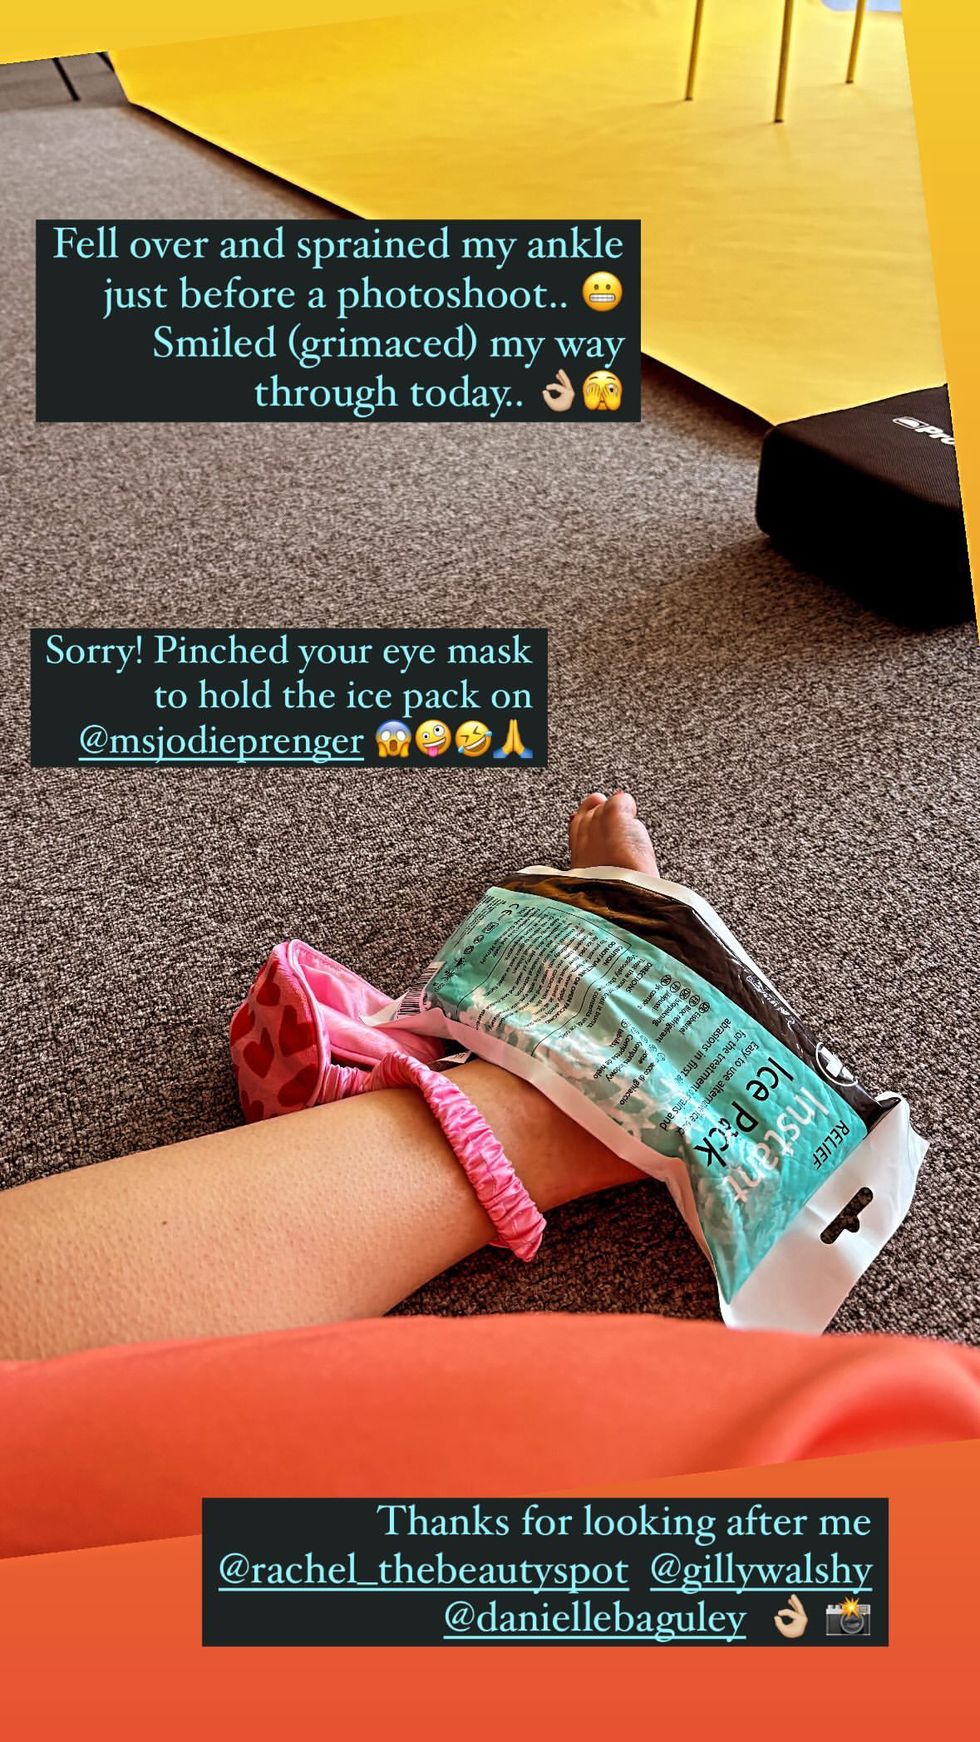 Samia Longchambon teilt ihren verstauchten Knöchel in ihren Instagram-Geschichten